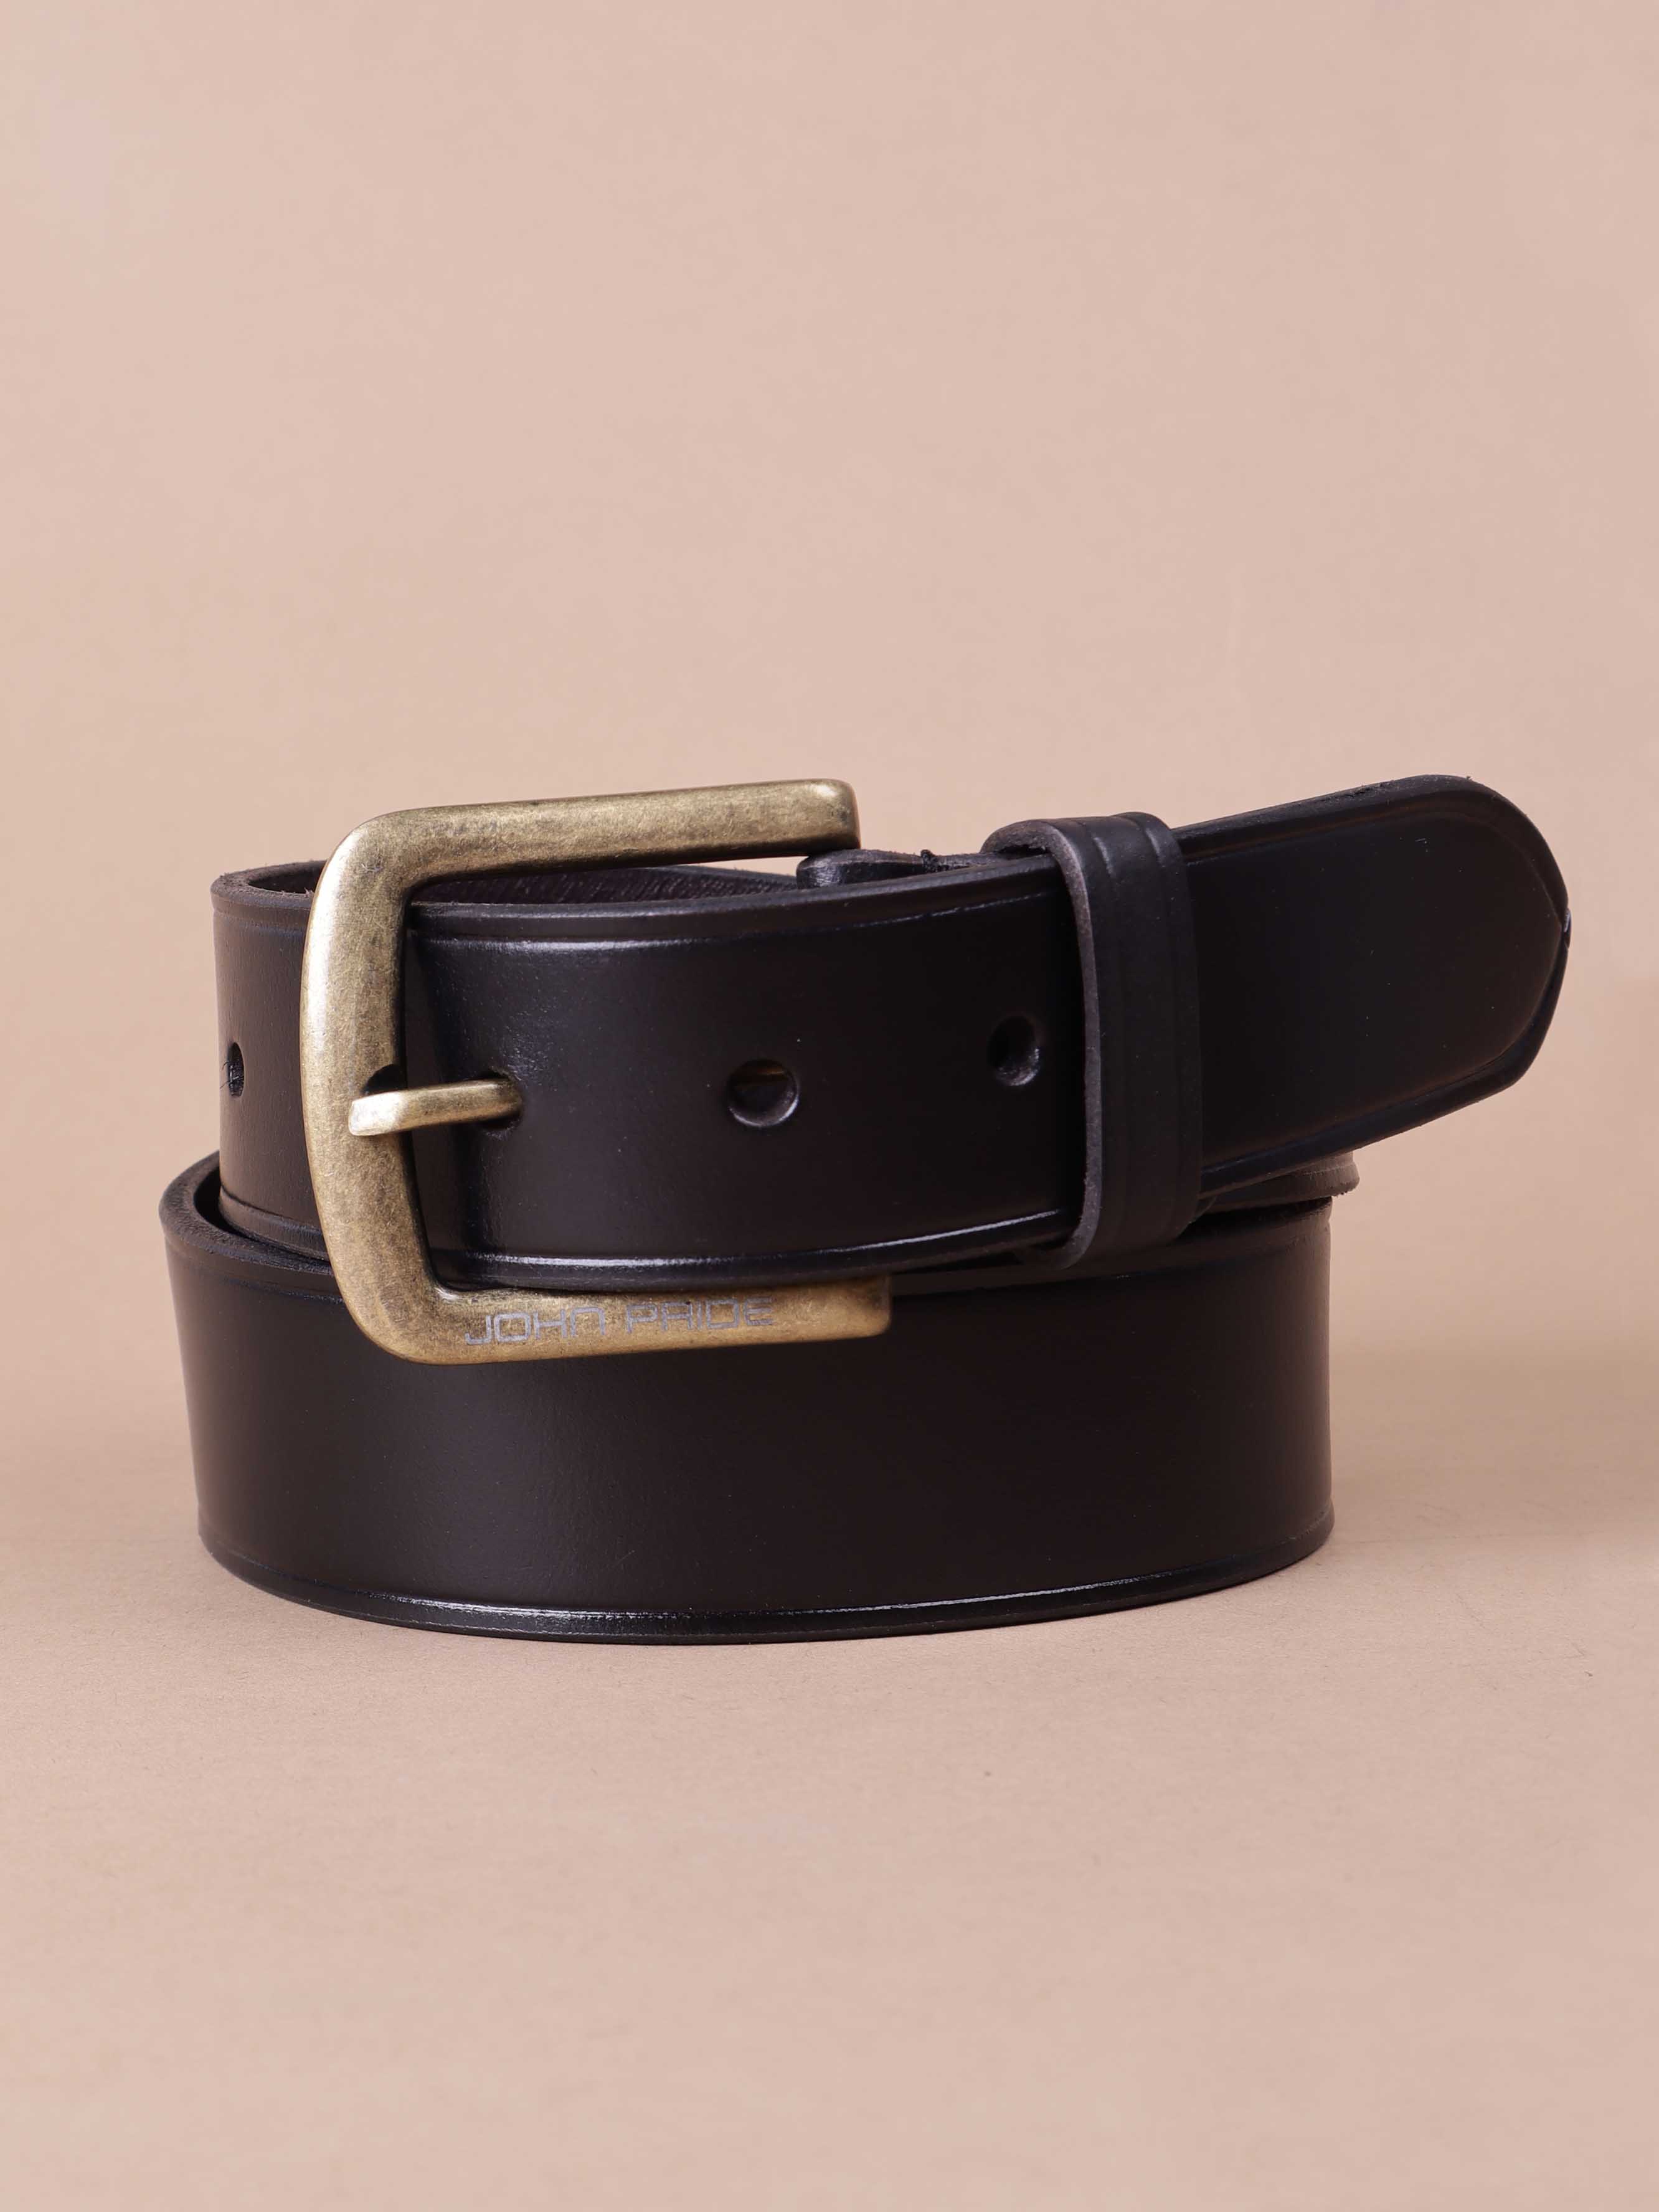 accessories/belts/JPBT1001/jpbt1001-4.jpg